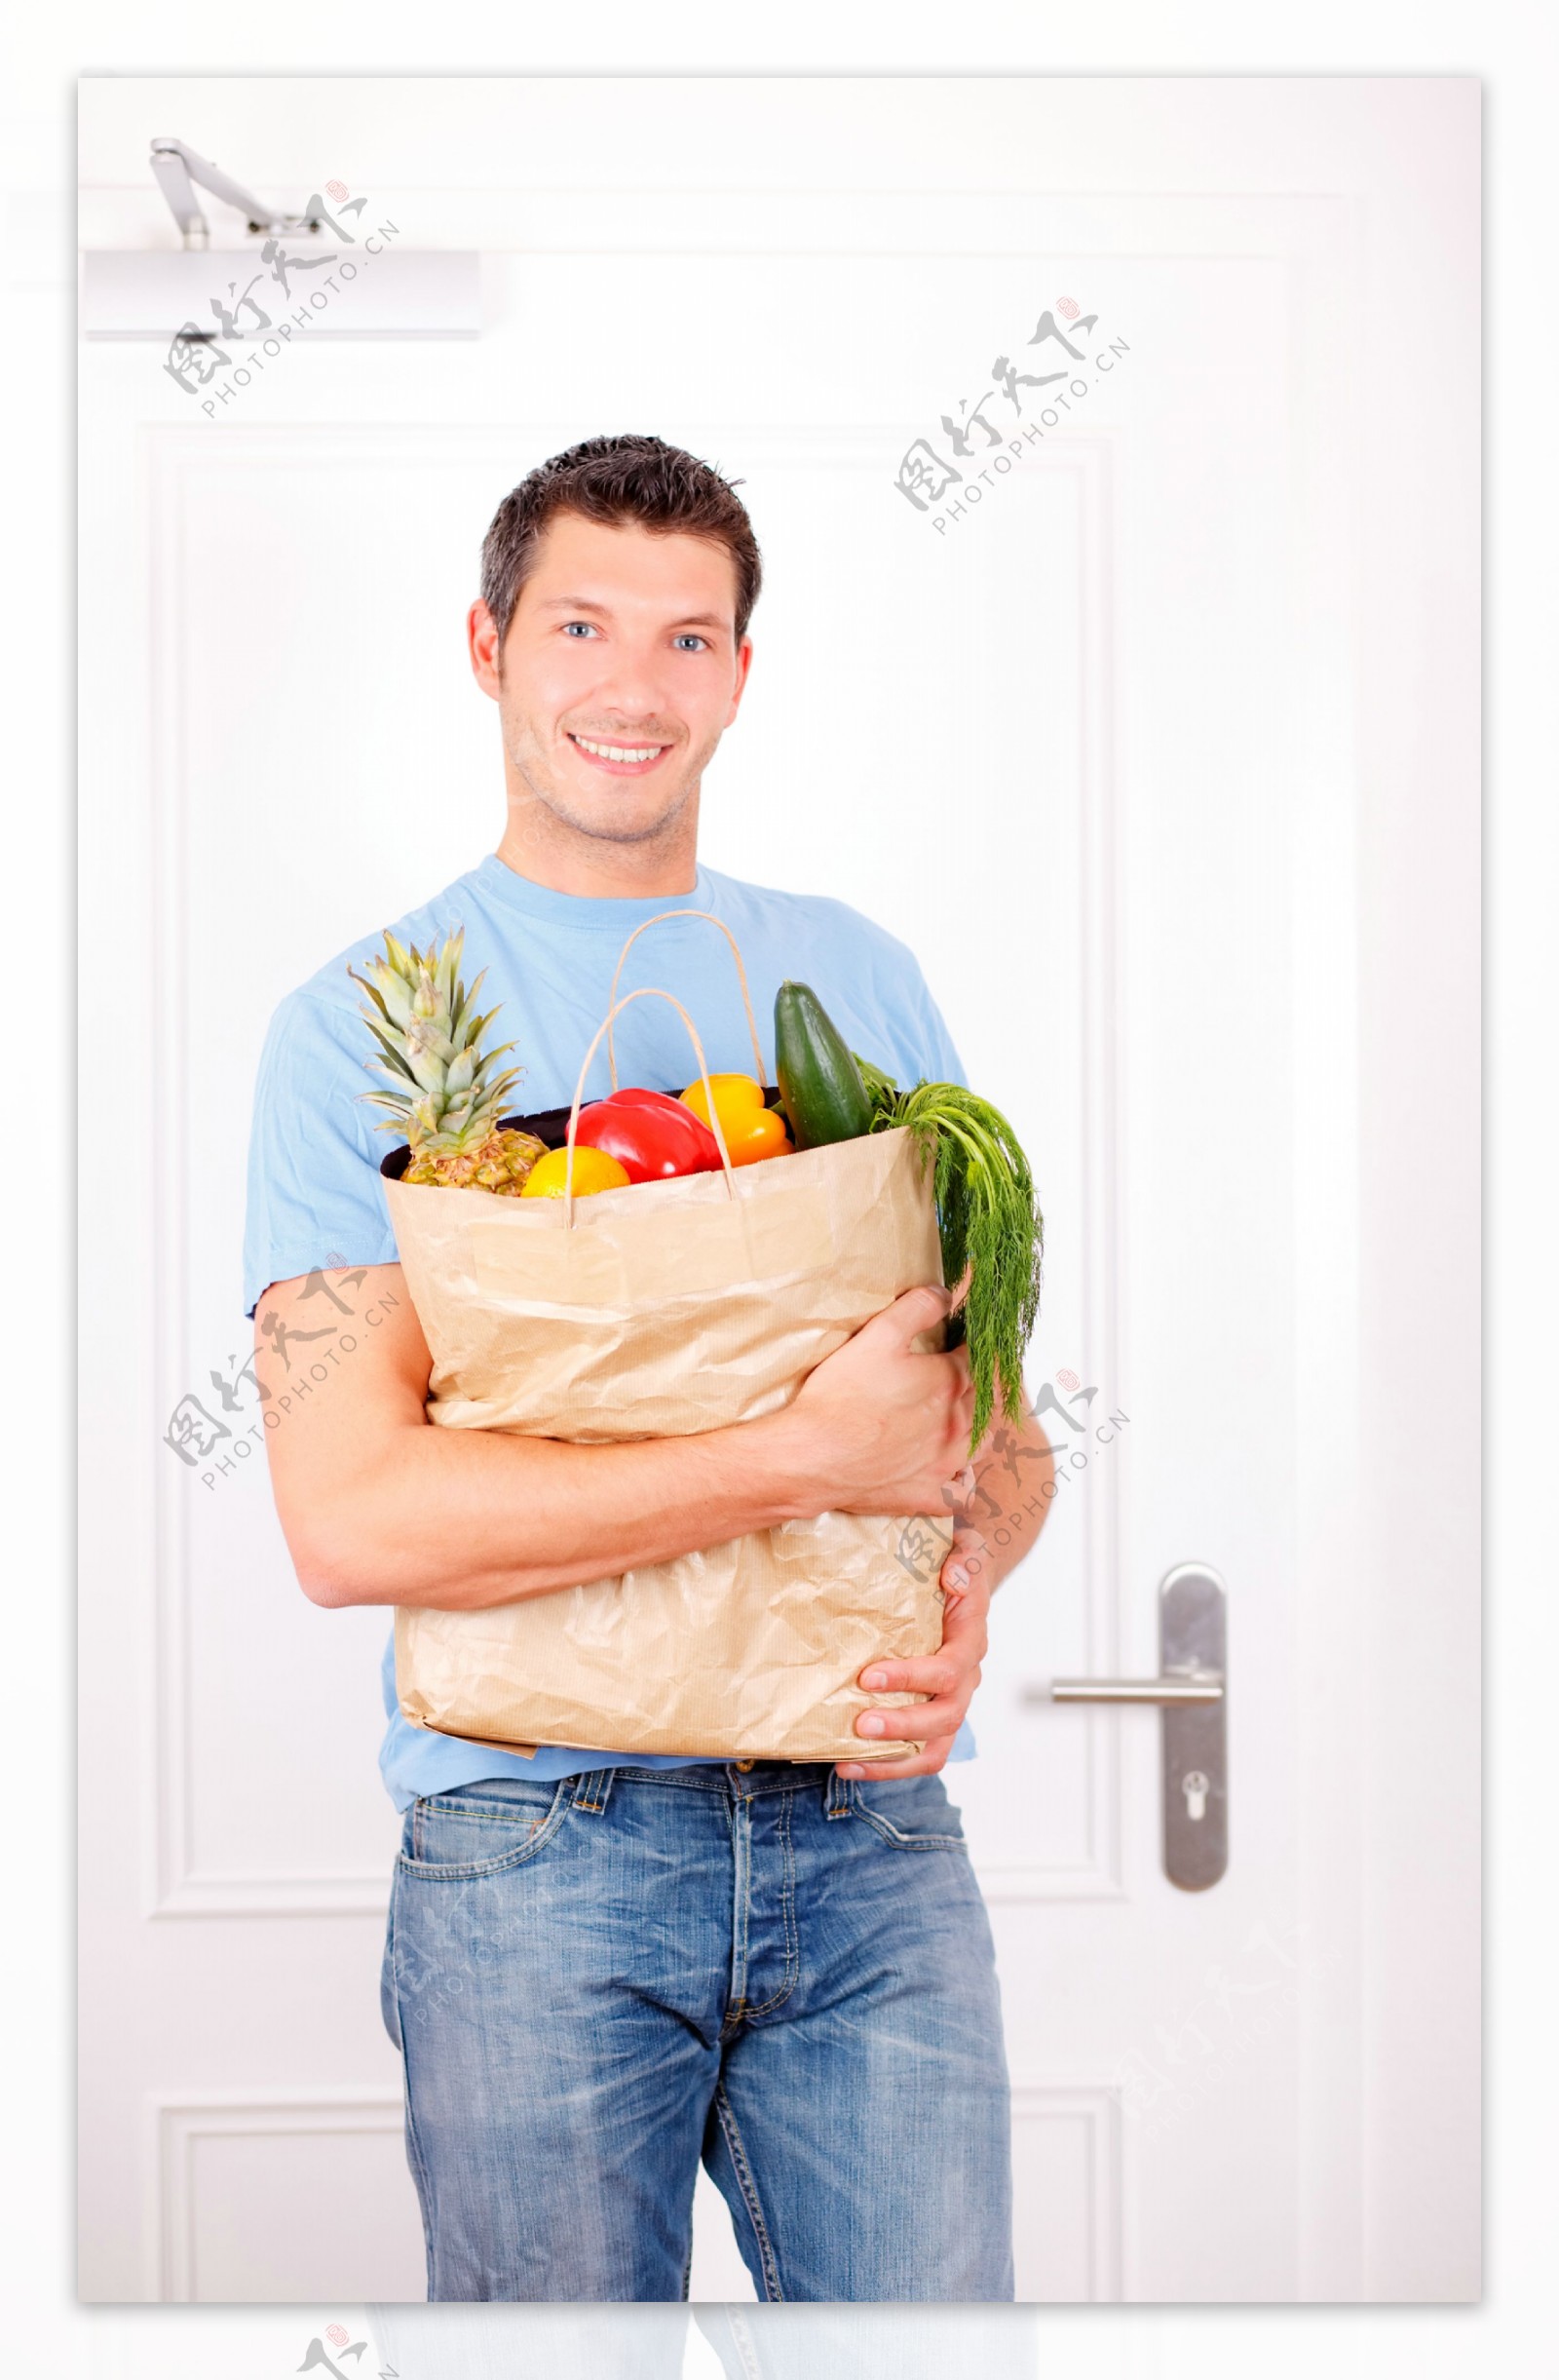 抱着蔬菜的男人图片